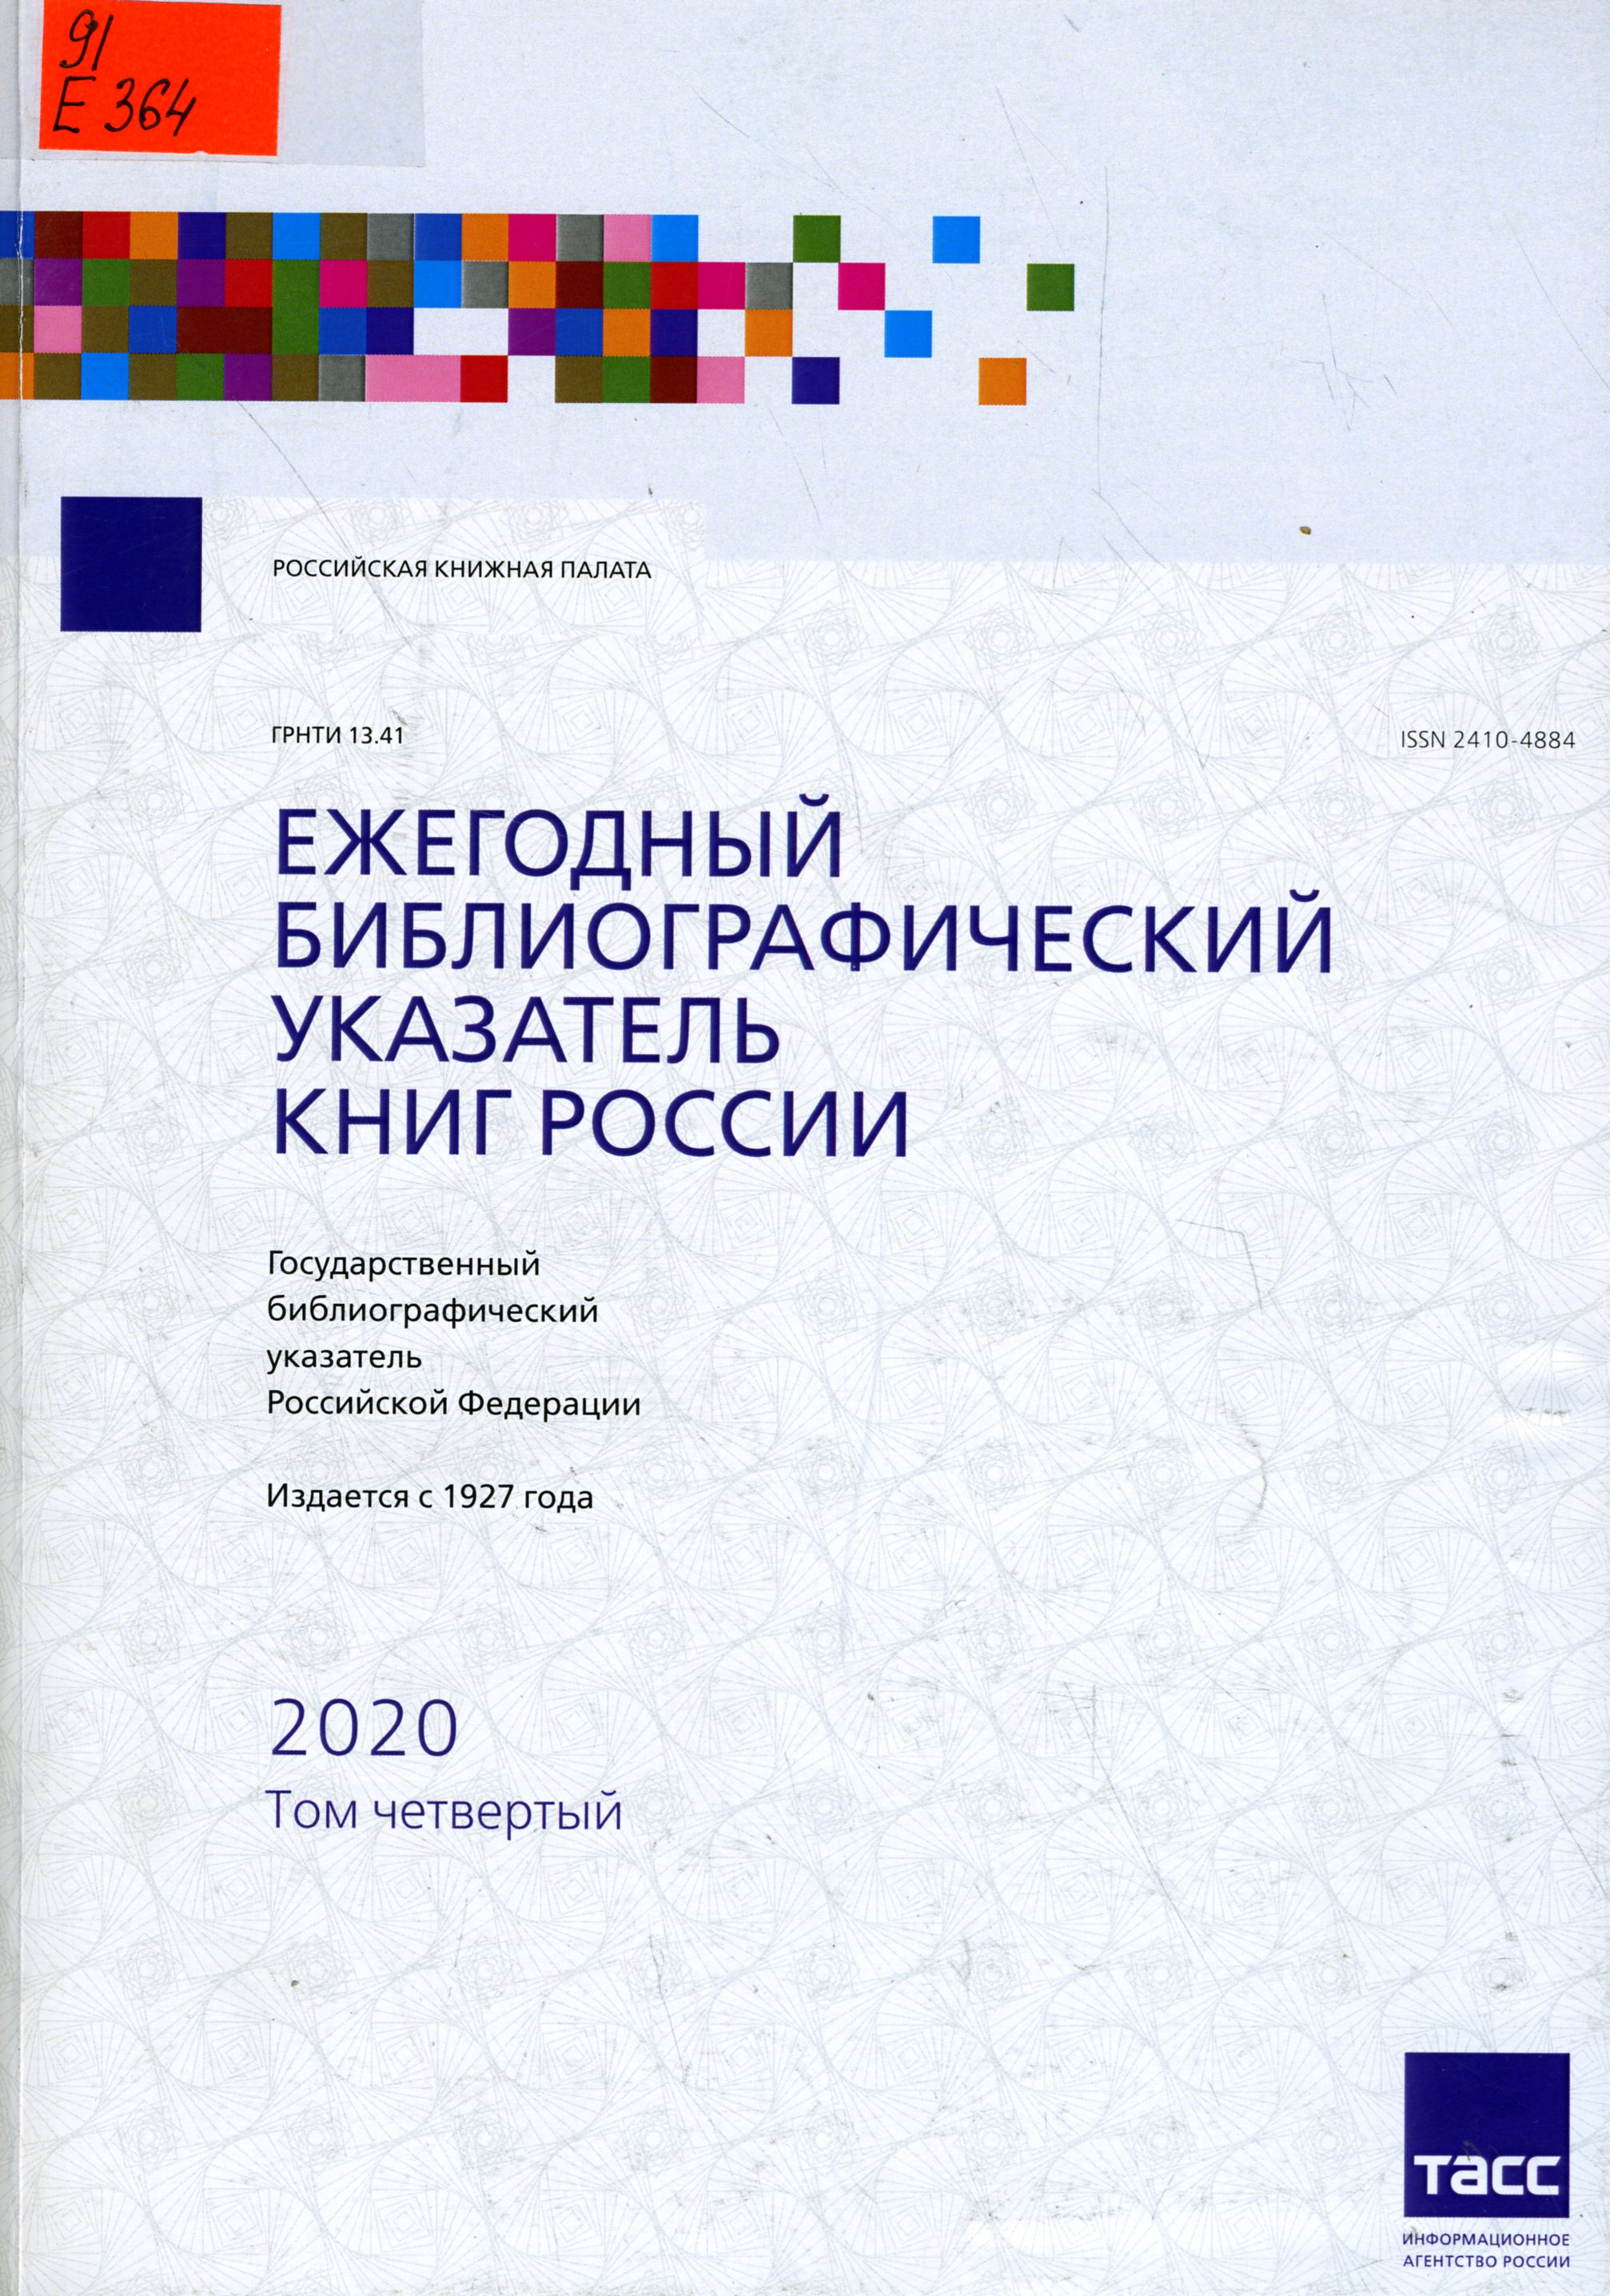 Ежегодный библиографический указатель книг России